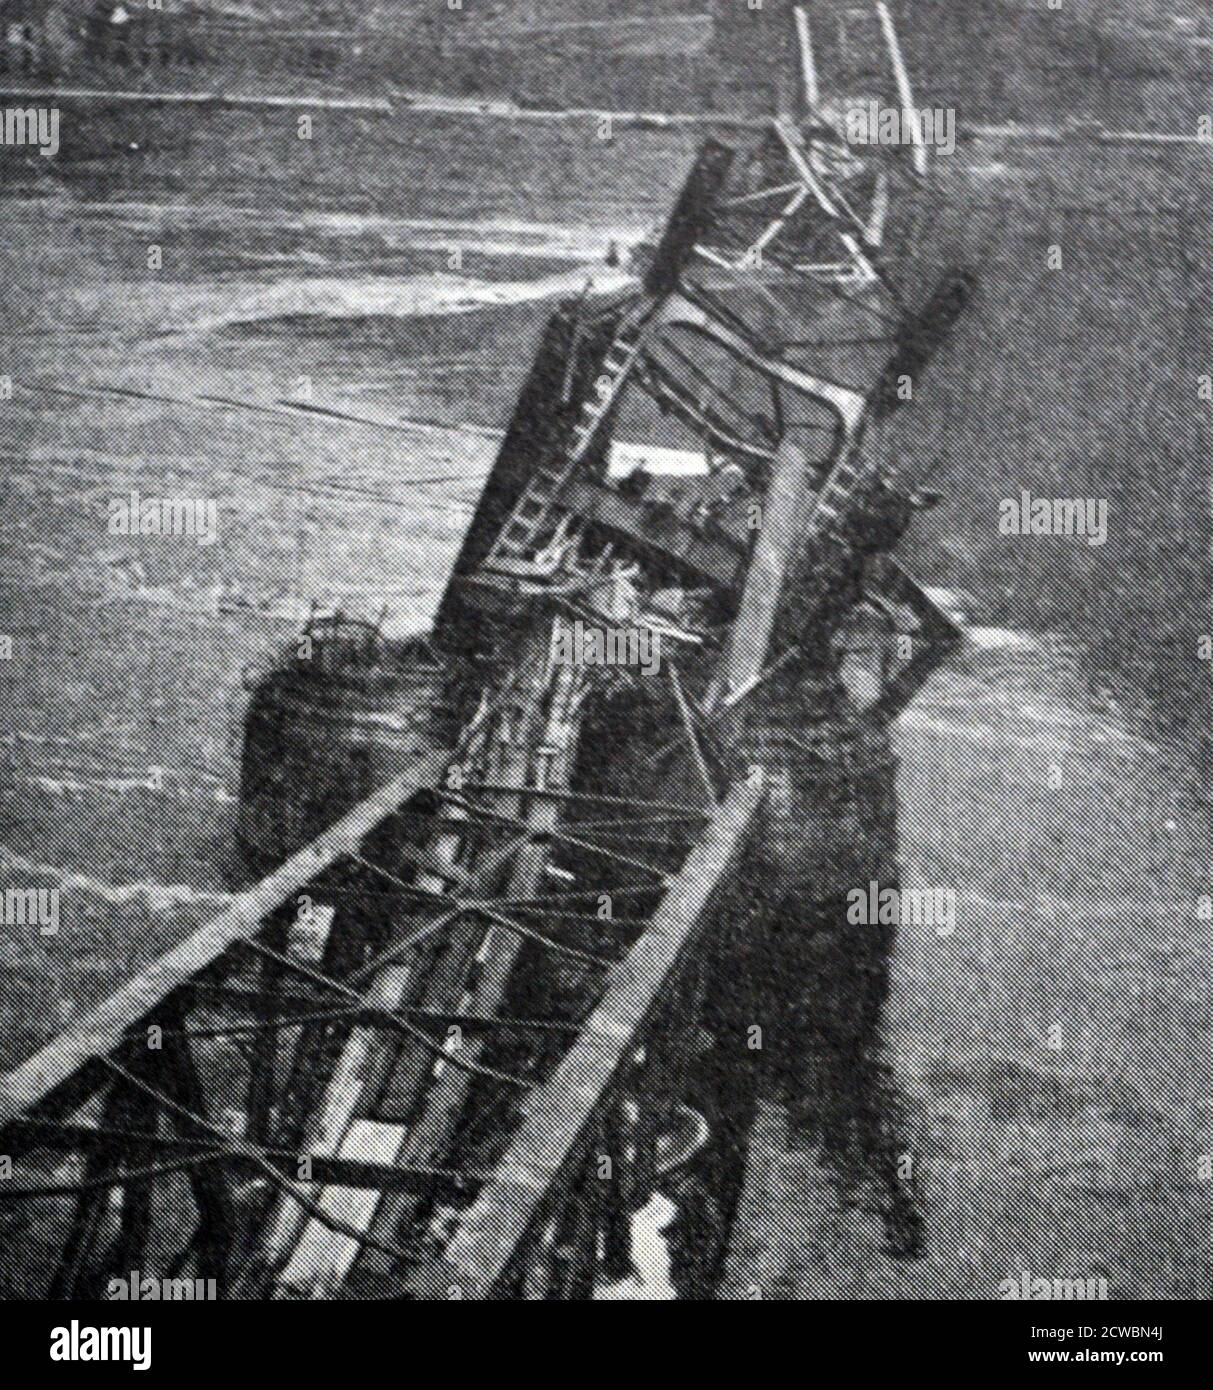 Photographie en noir et blanc de la Seconde Guerre mondiale (1939-1945) montrant le pont Ludendorff sur le Rhin à la ville allemande de Remagen; le pont s'est effondré le 17 mars 1945 tuant 33 militaires américains. Banque D'Images